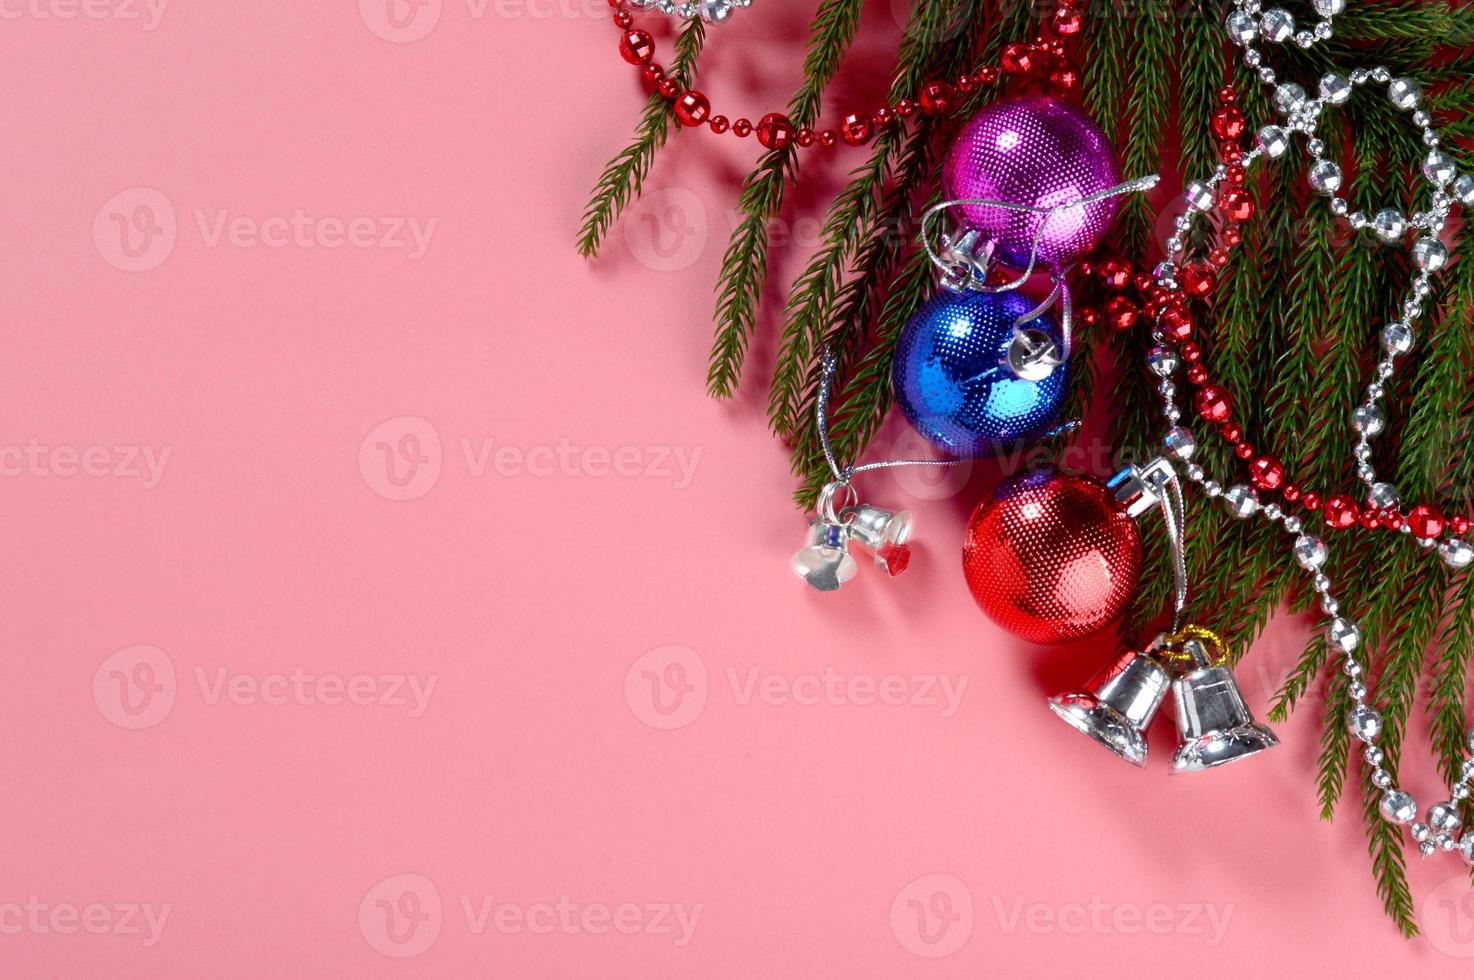 juldekoration julboll och ornament med grenen av julgran foto